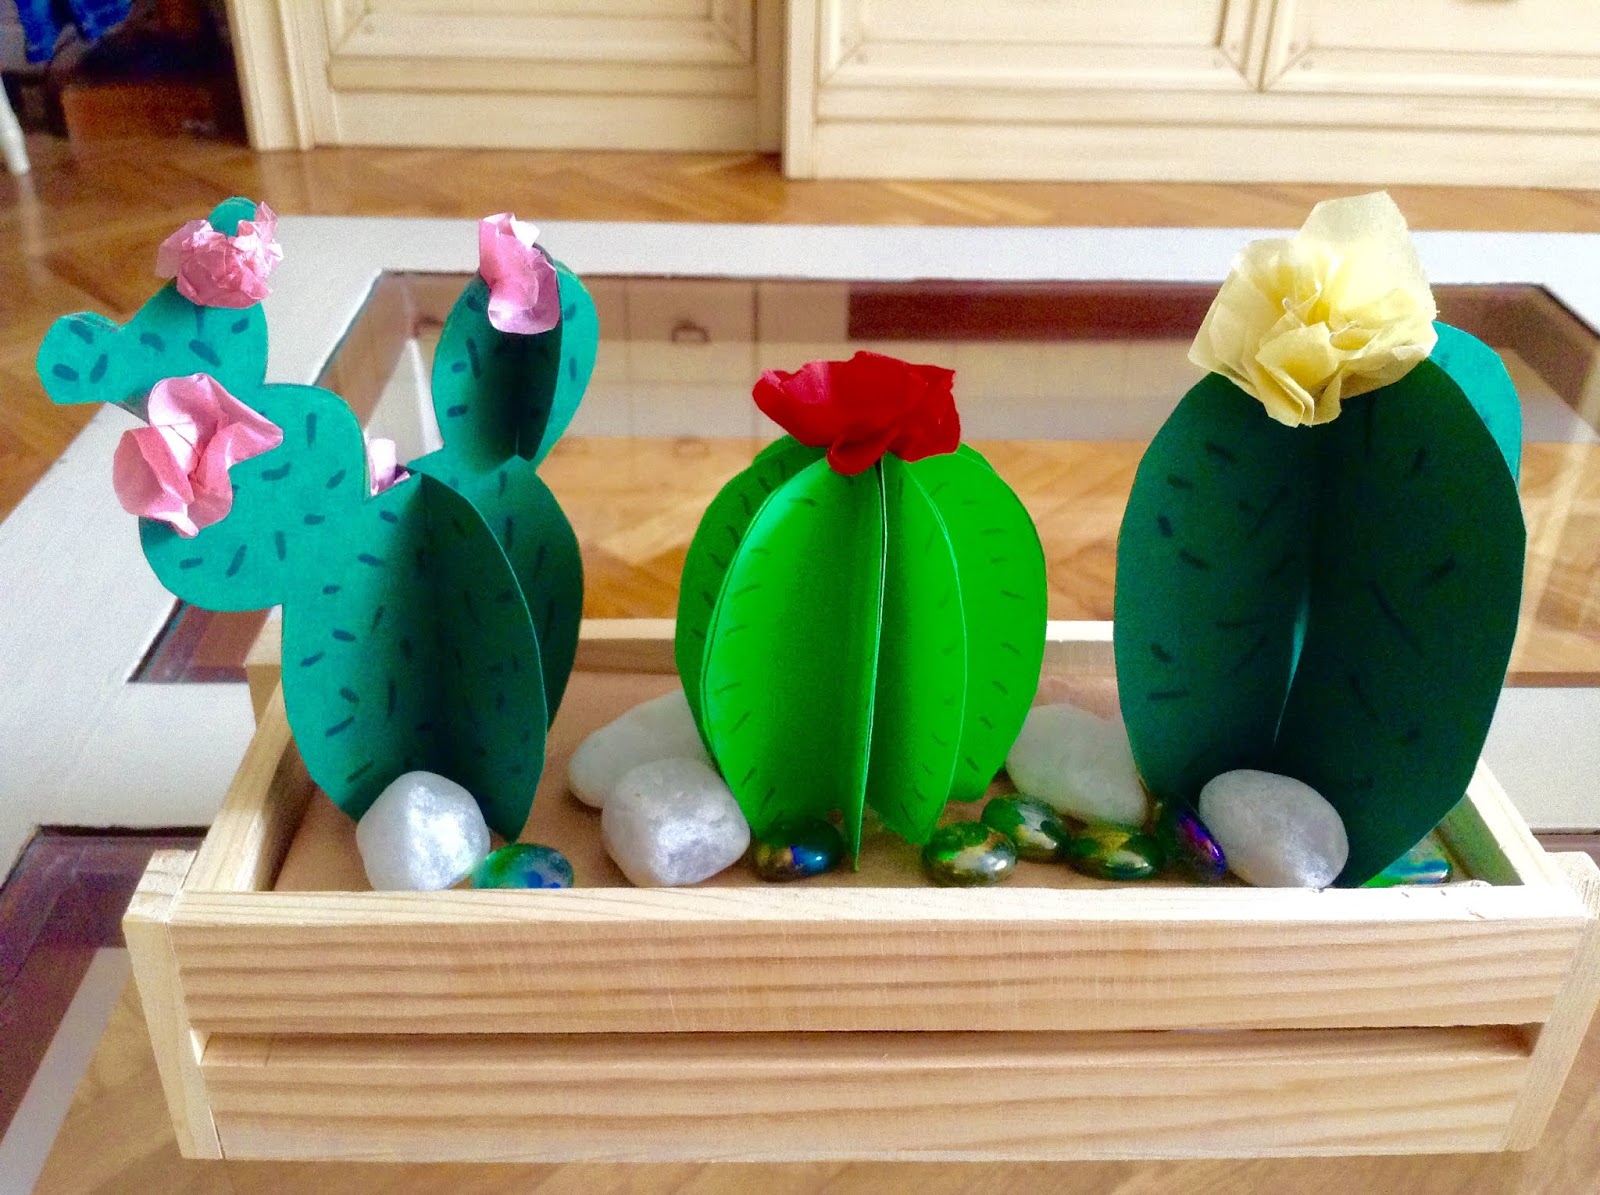 Cactus de papel - Idea de decoración súper fácil 